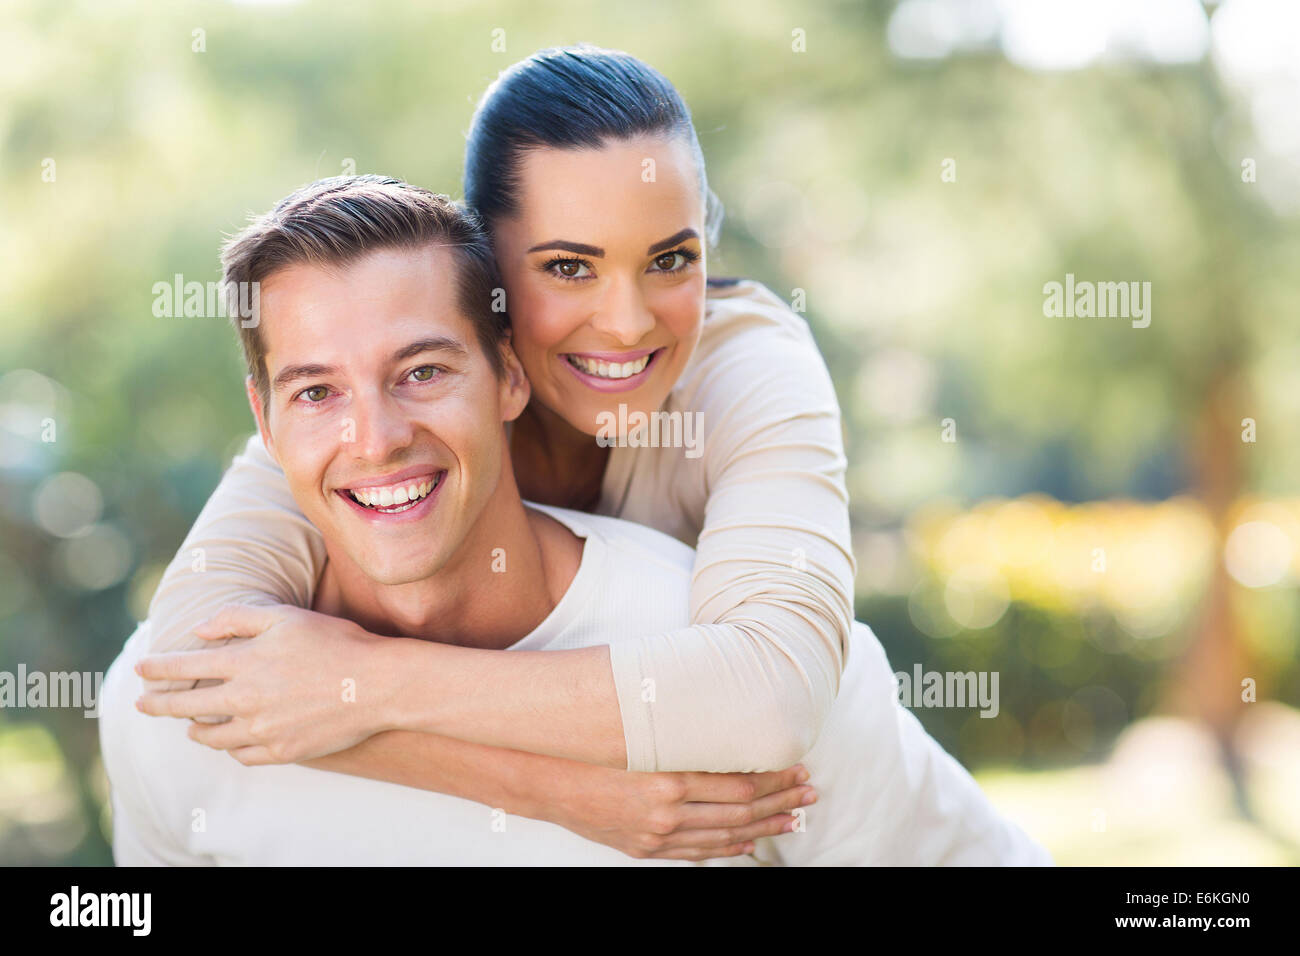 Usurpation de l'attractive young couple outdoors Banque D'Images